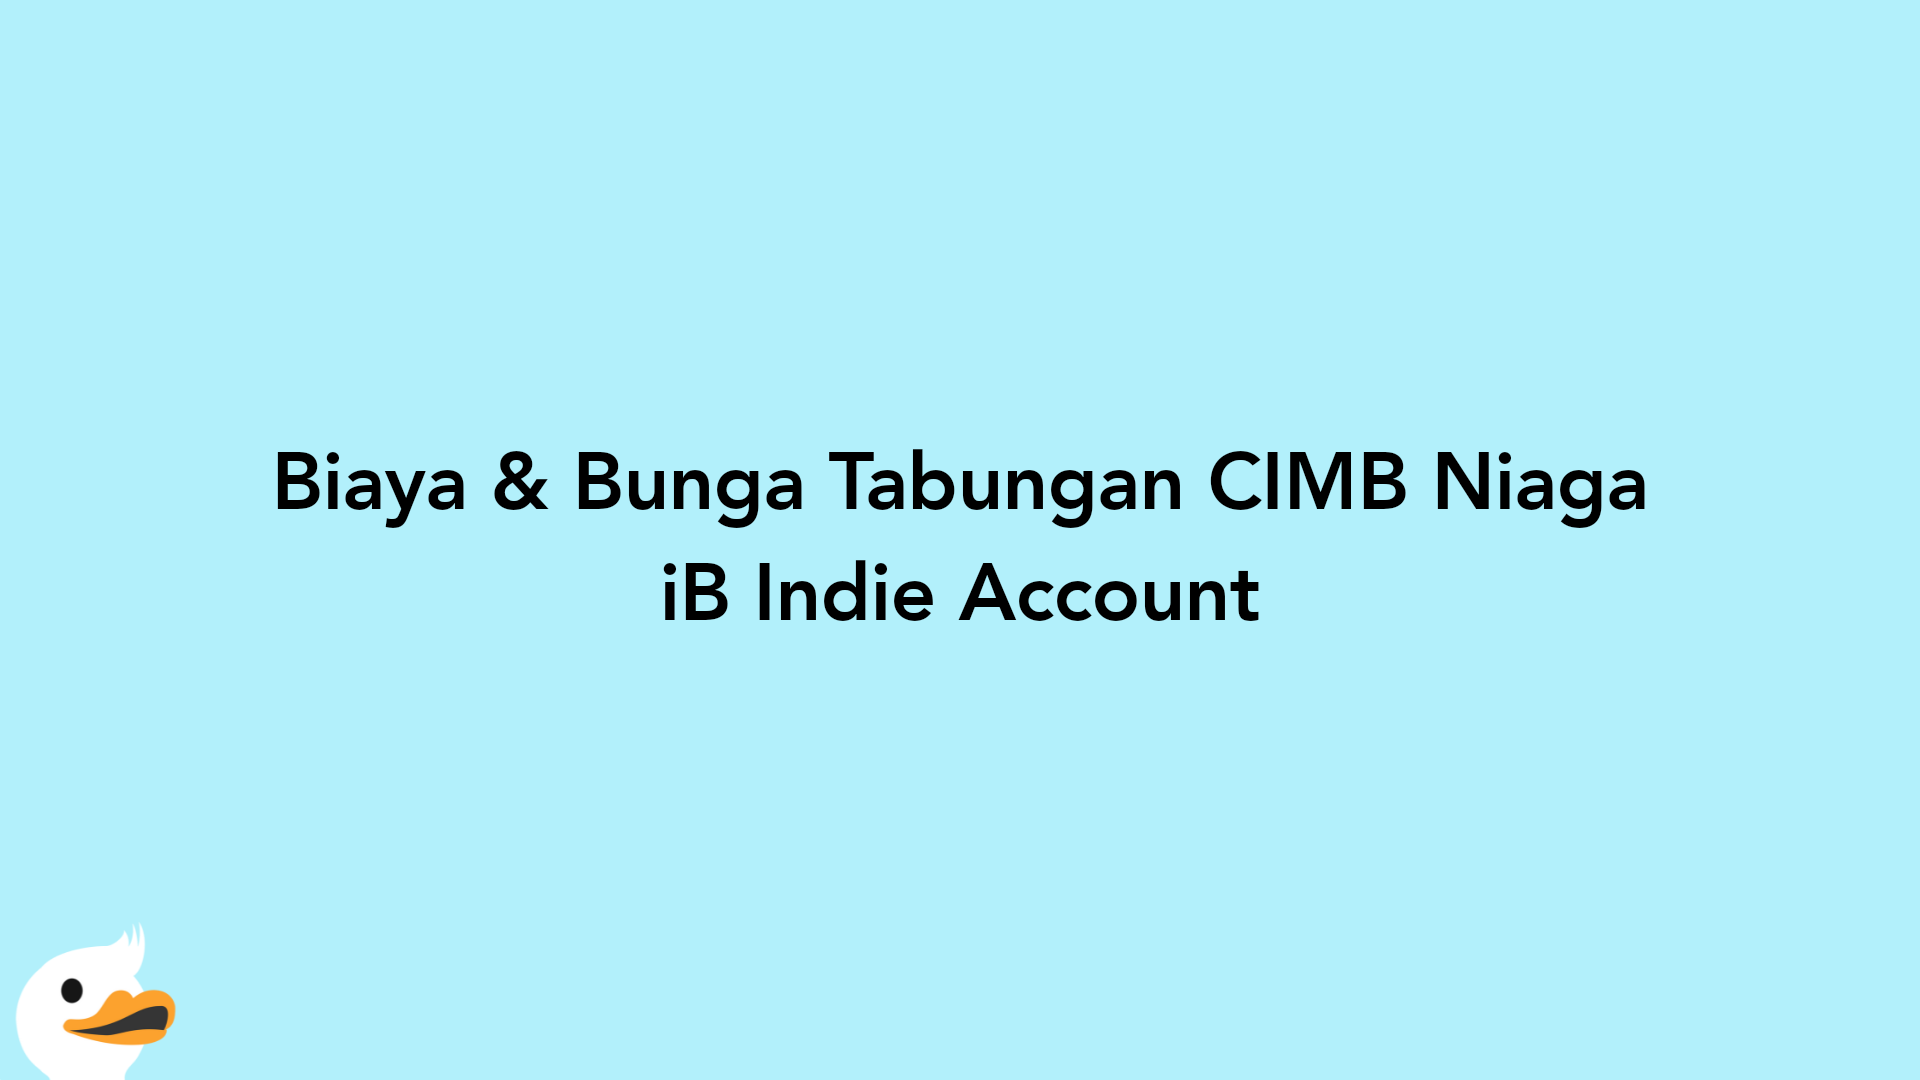 Biaya & Bunga Tabungan CIMB Niaga iB Indie Account